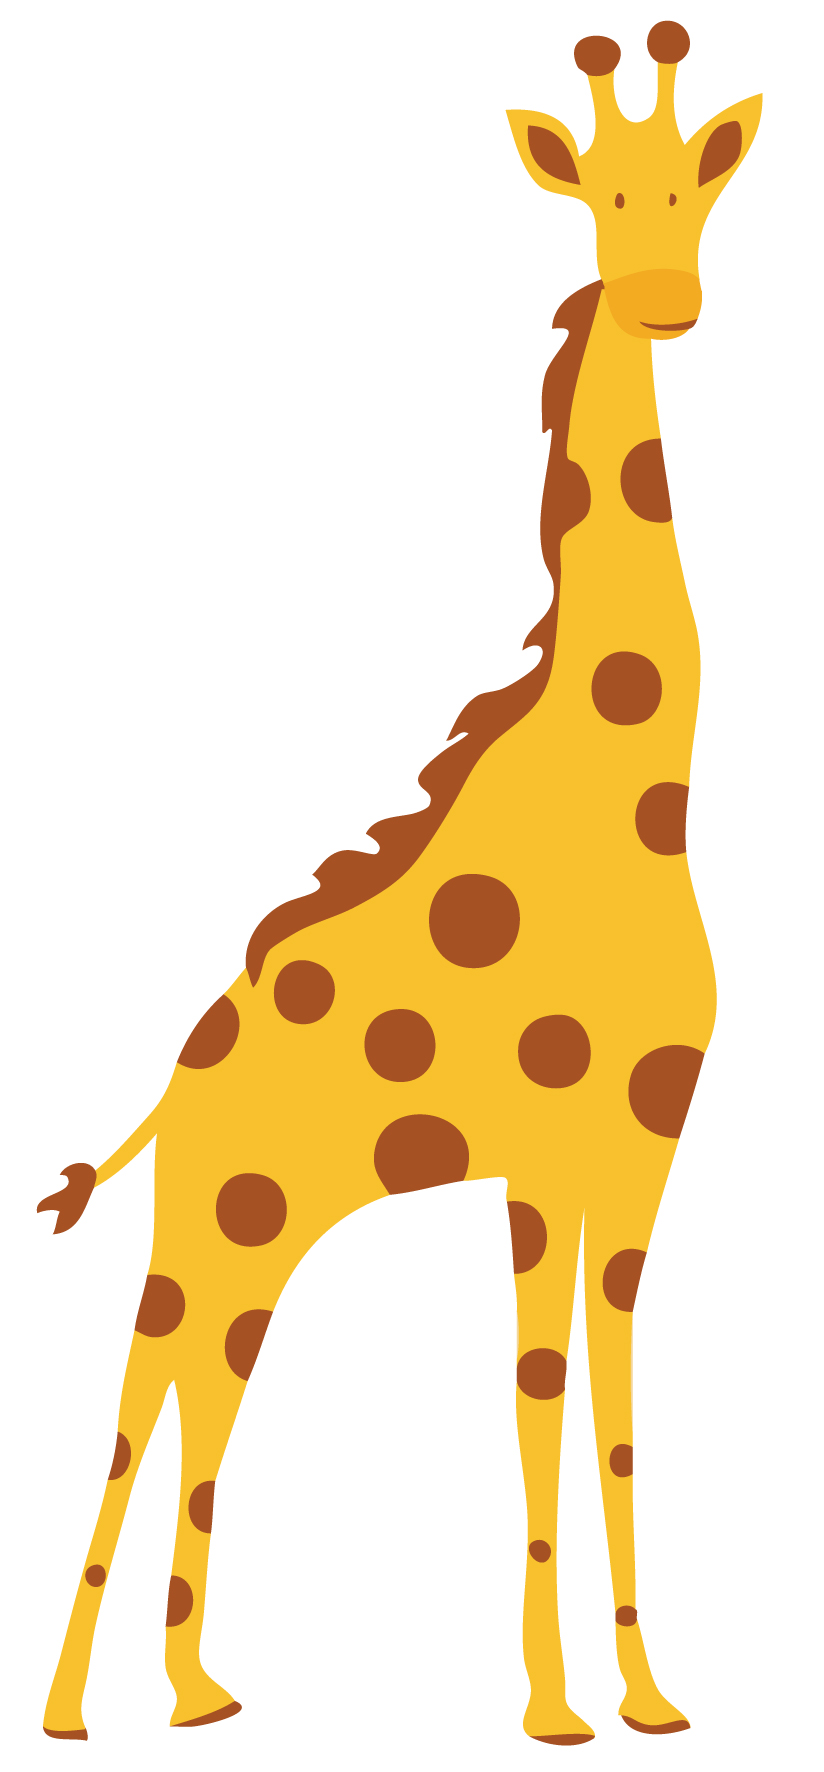 Template Of A Giraffe Giraffe Poster Template How To Create A Giraffe